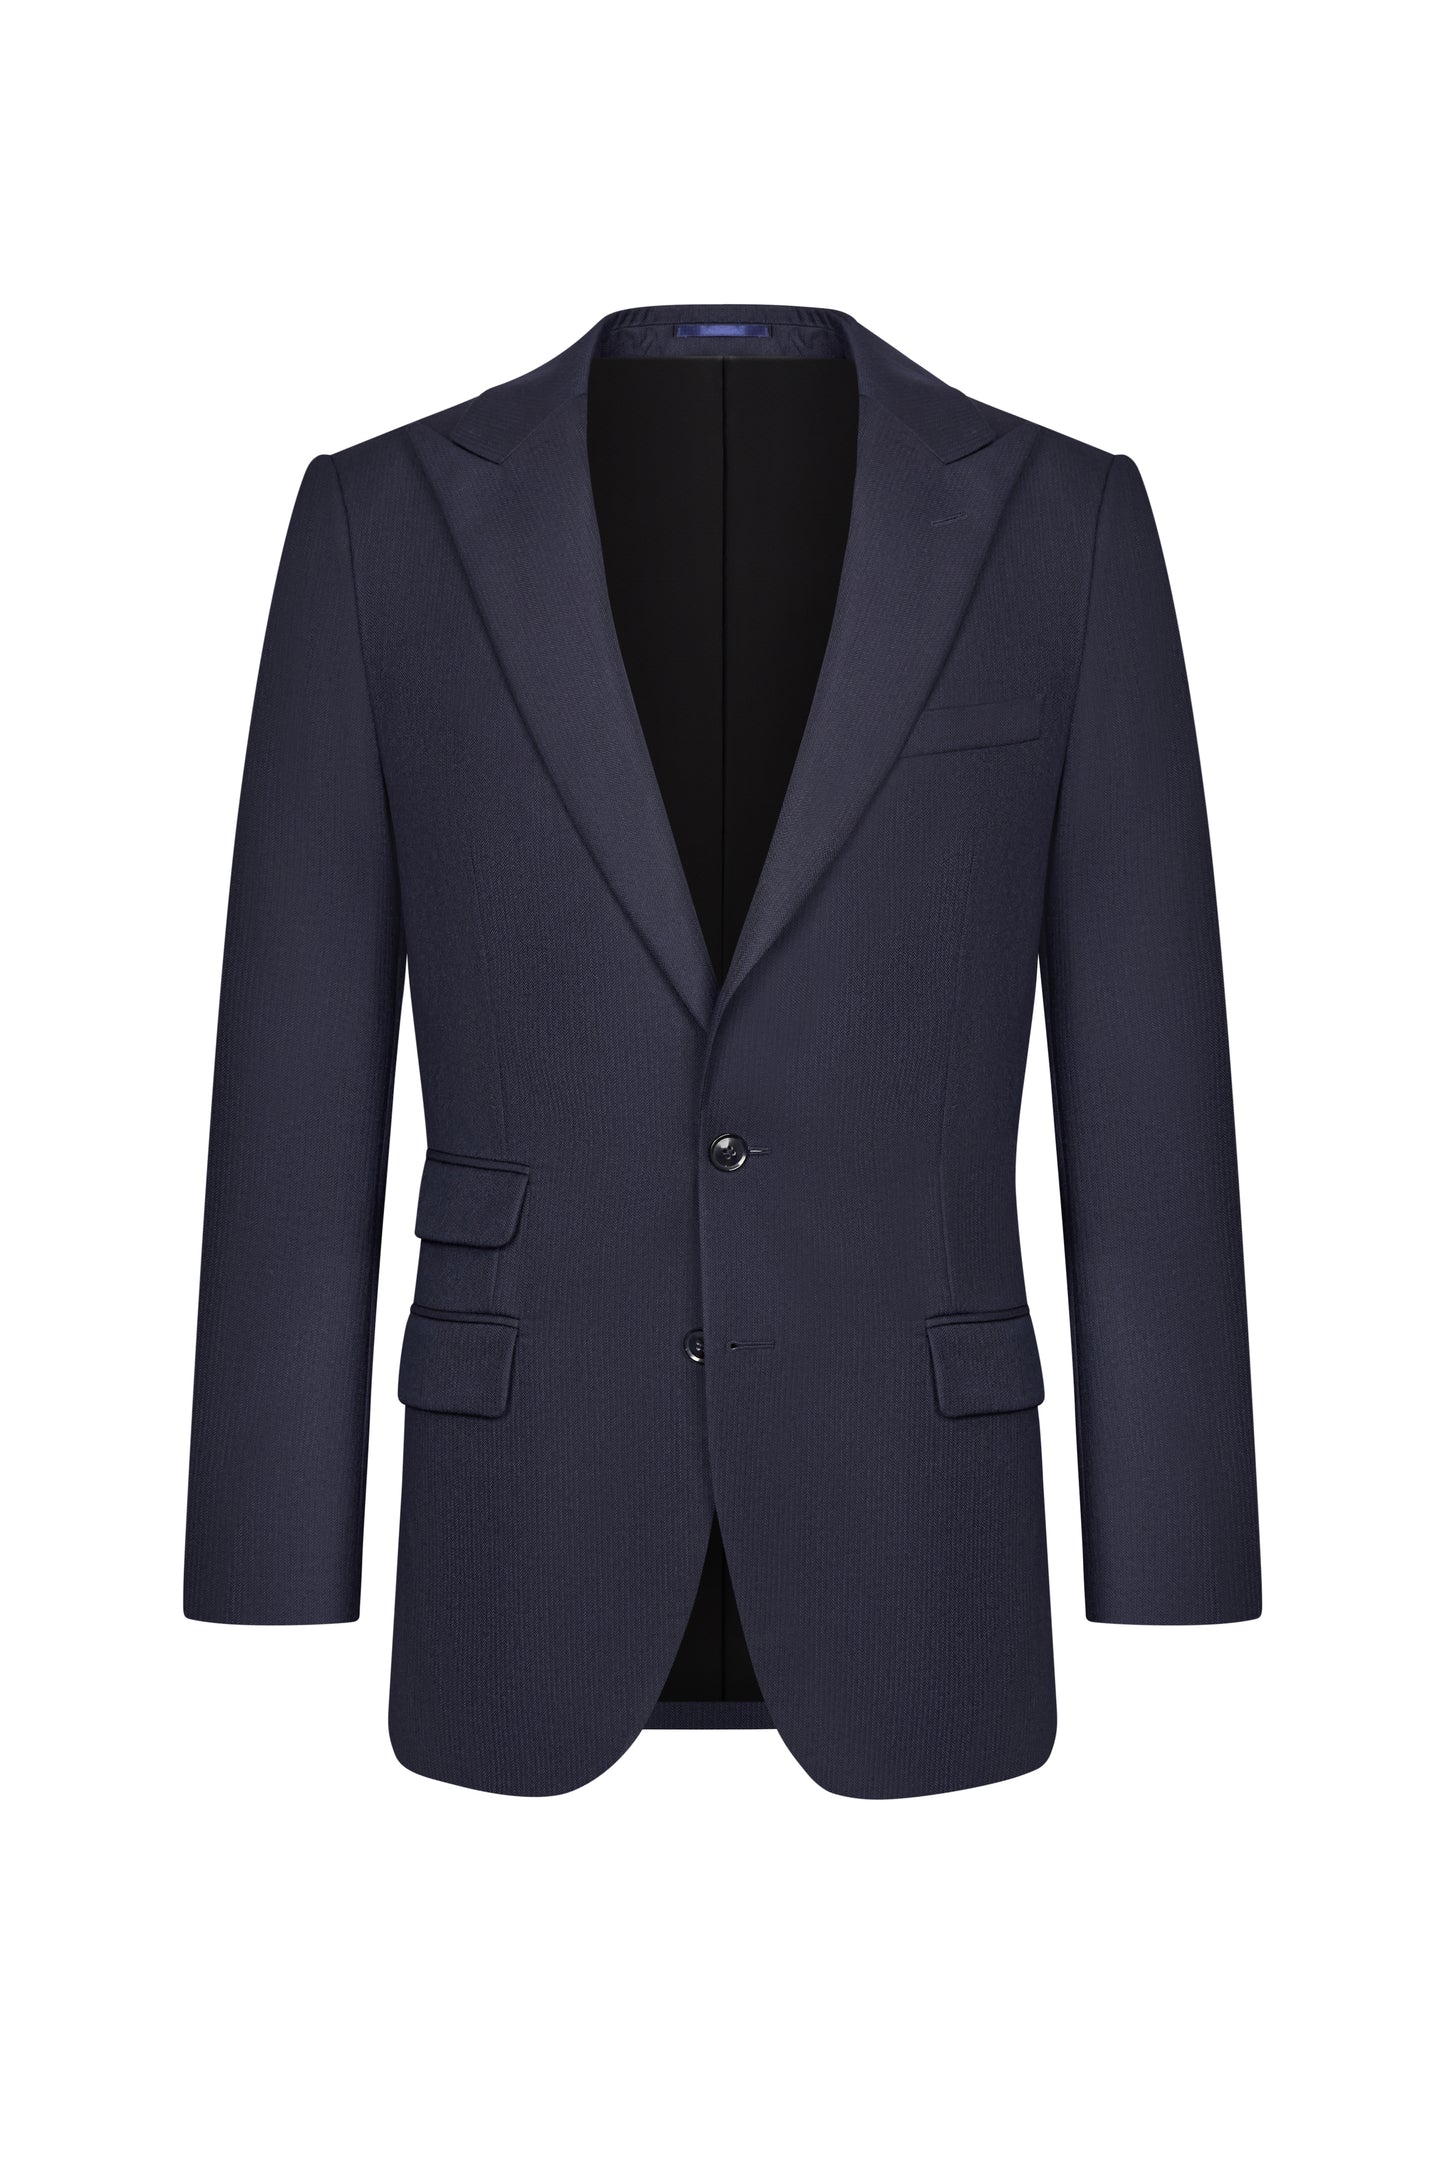 Scabal Navy Blue Herringbone Custom Suit